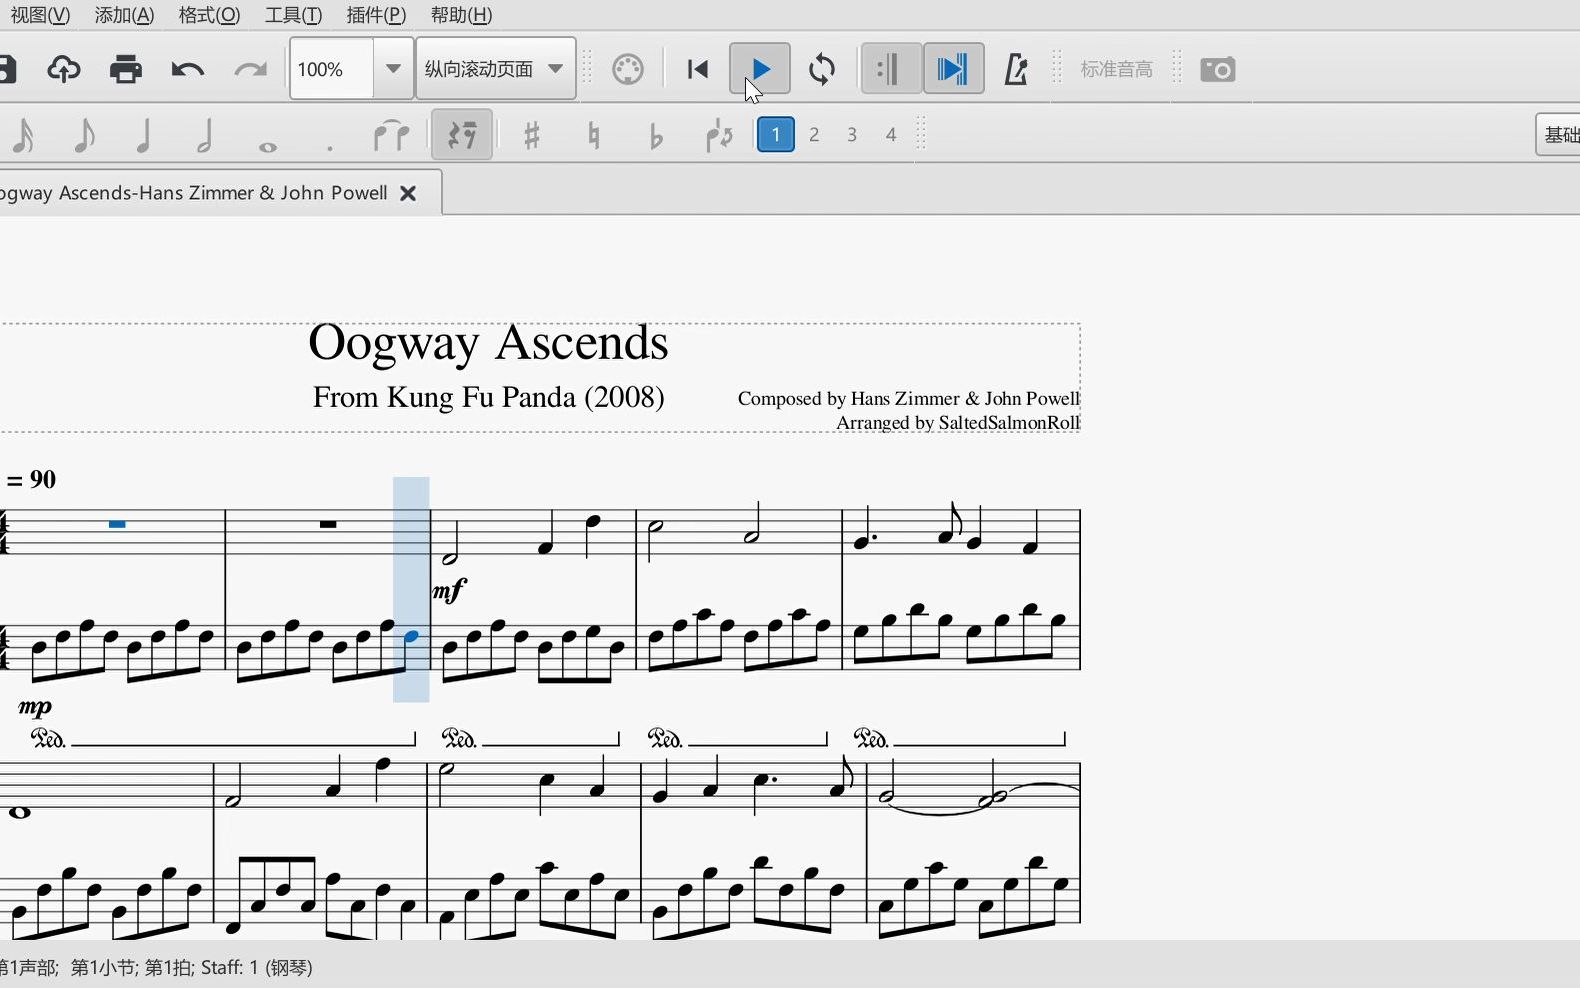 【功夫熊猫/钢琴】【SSR】乌龟仙逝 Oogway Ascends OST钢琴（谱在简介）